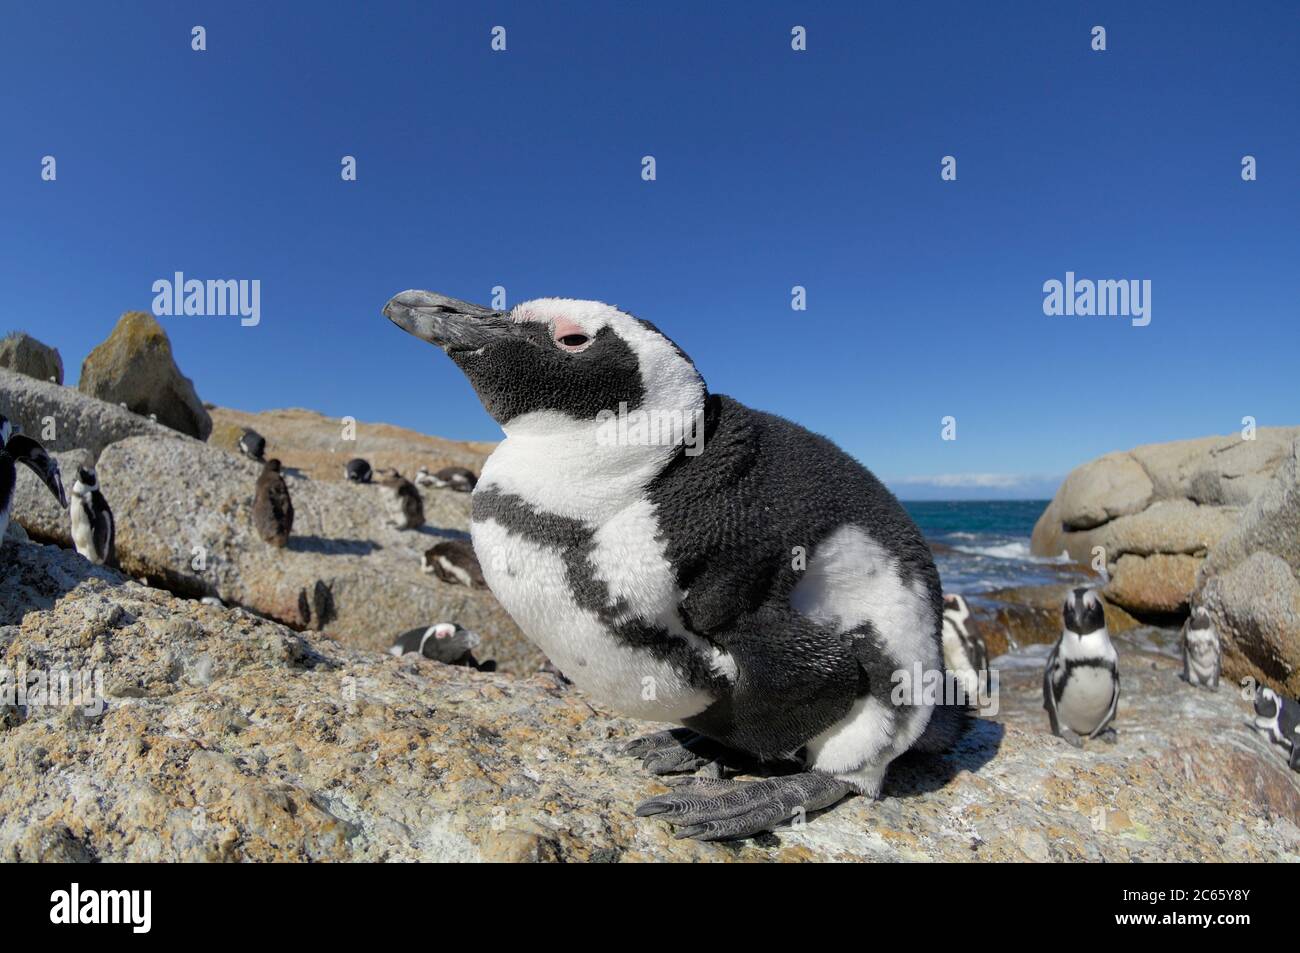 Der Afrikanische Pinguin (Spheniscus demersus), auch bekannt als der Schwarzfußpinguin (und früher als der Jackass Penguin), ist an der Südwestküste Afrikas zu finden. Boulders Beach ist eine Touristenattraktion, für den Strand, Schwimmen und die Pinguine. Die Pinguine werden es den Menschen ermöglichen, sich ihnen so nah wie einen Meter (drei Fuß) zu nähern. Stockfoto